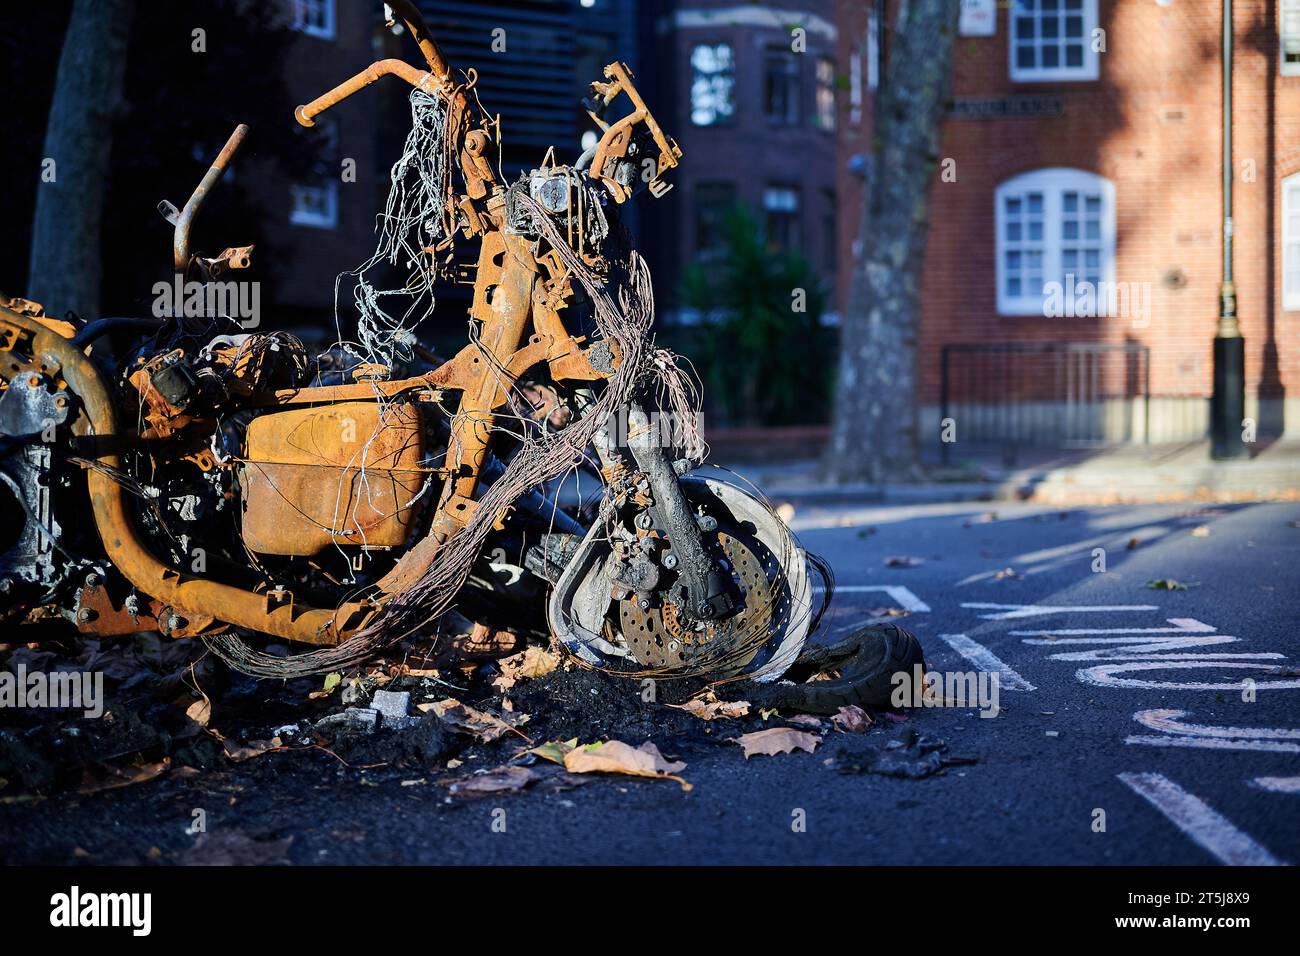 05 novembre 2023 - LondonUK : Close up de devant de cyclomoteur brûlé dans la rue de Londres par jour ensoleillé avec soleil d'hiver Banque D'Images